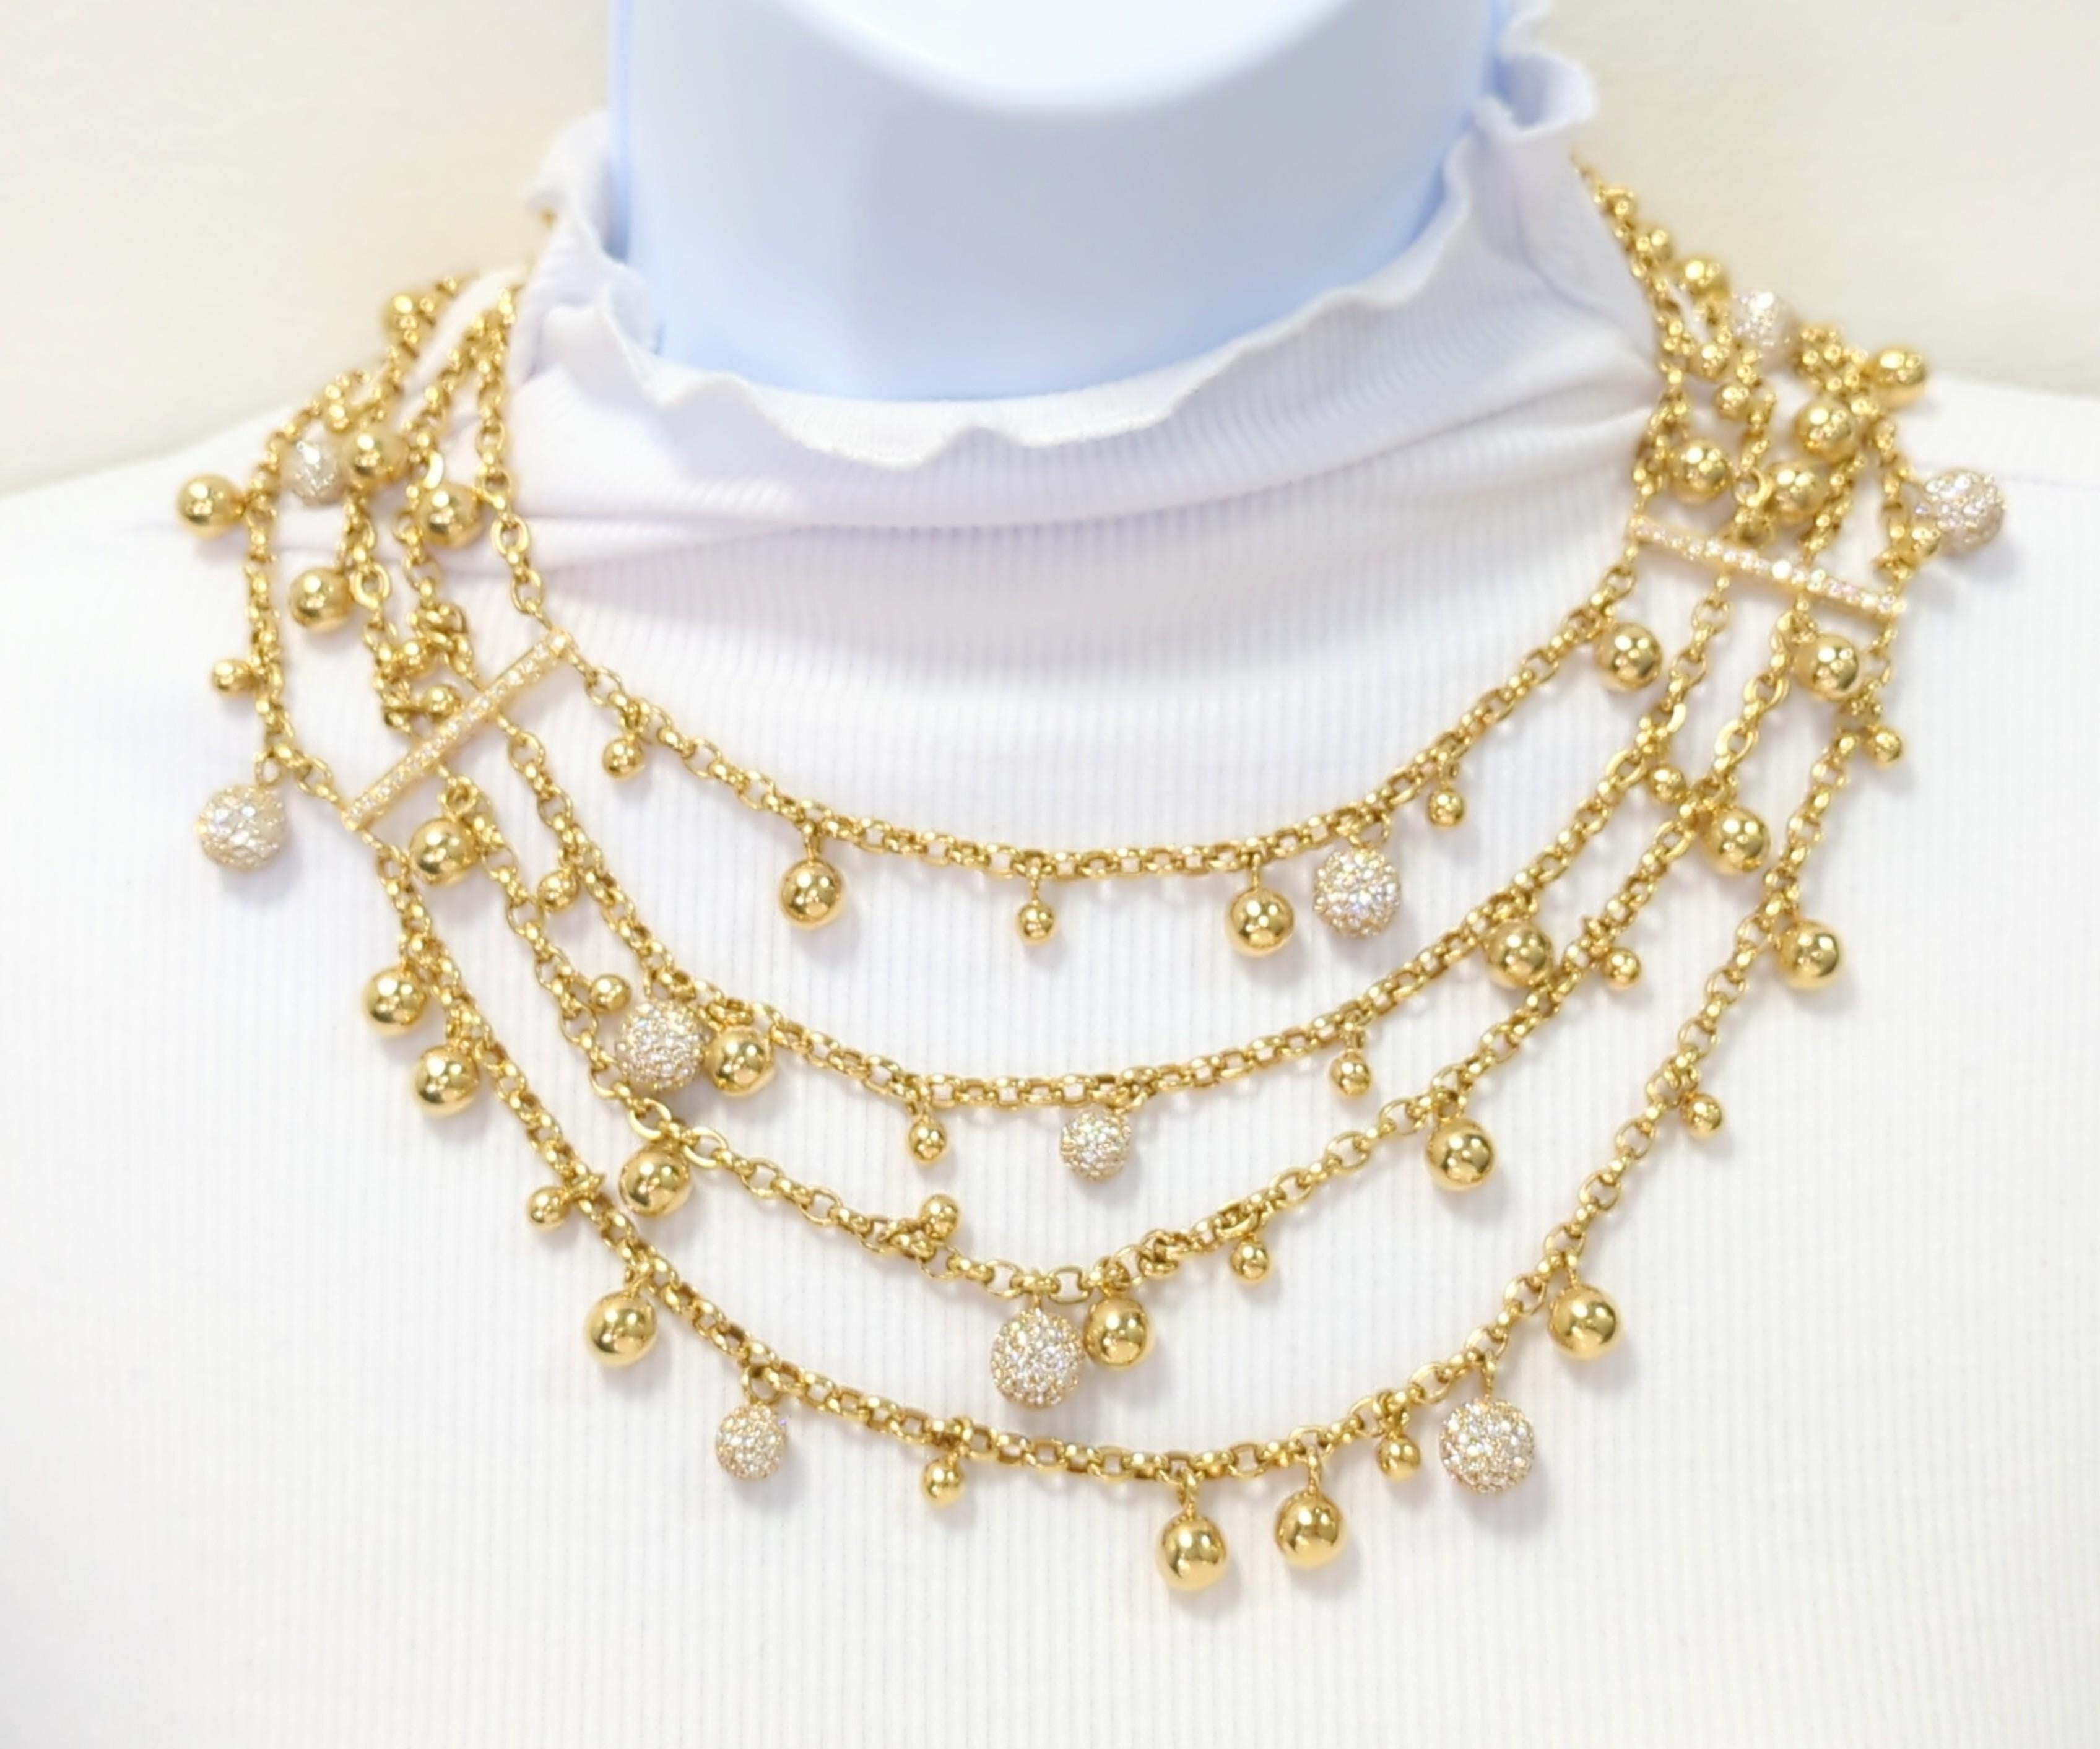 Wunderschöne klobige Halskette und Armband aus dem Nachlass Tallarico mit runden Kugeln aus weißen Pave-Diamanten, großer Kette, einigen Perlen und einem großartigen Look!  Handgefertigt in 18k Gelbgold.  